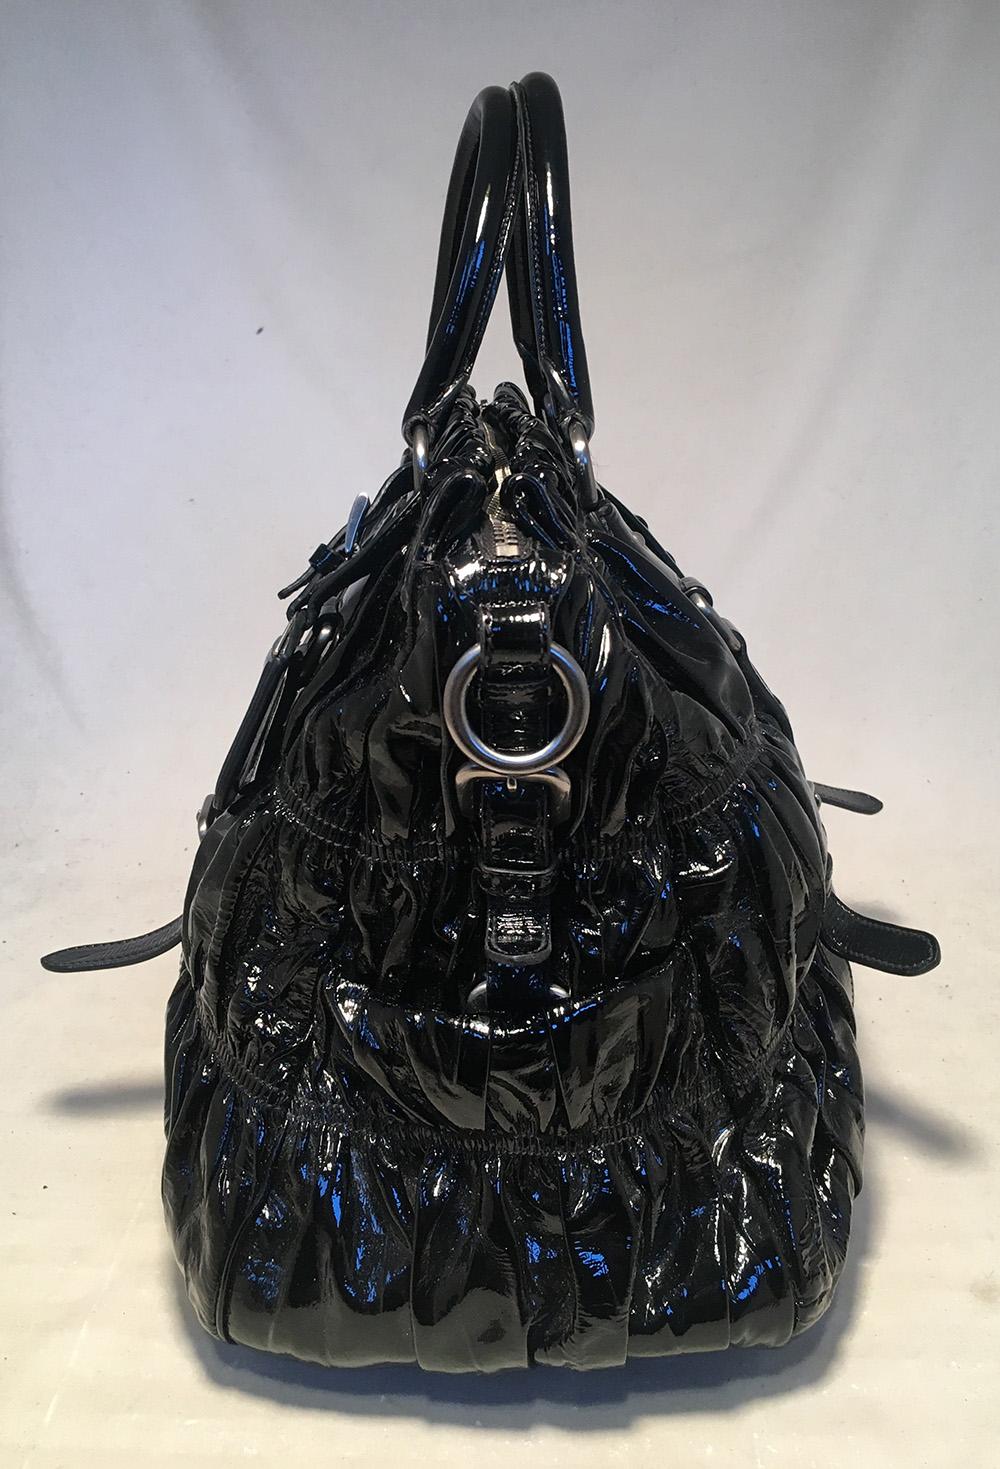 Prada Black Patent Leather Gaufre Ruched Shoulder Bag Tote in ausgezeichnetem Zustand. Außen aus schwarzem Lackleder im charakteristischen gerüschten Gaufre-Stil mit silberner Hardware und abnehmbarem Schulterriemen aus Nappaleder. Gepäckanhänger am